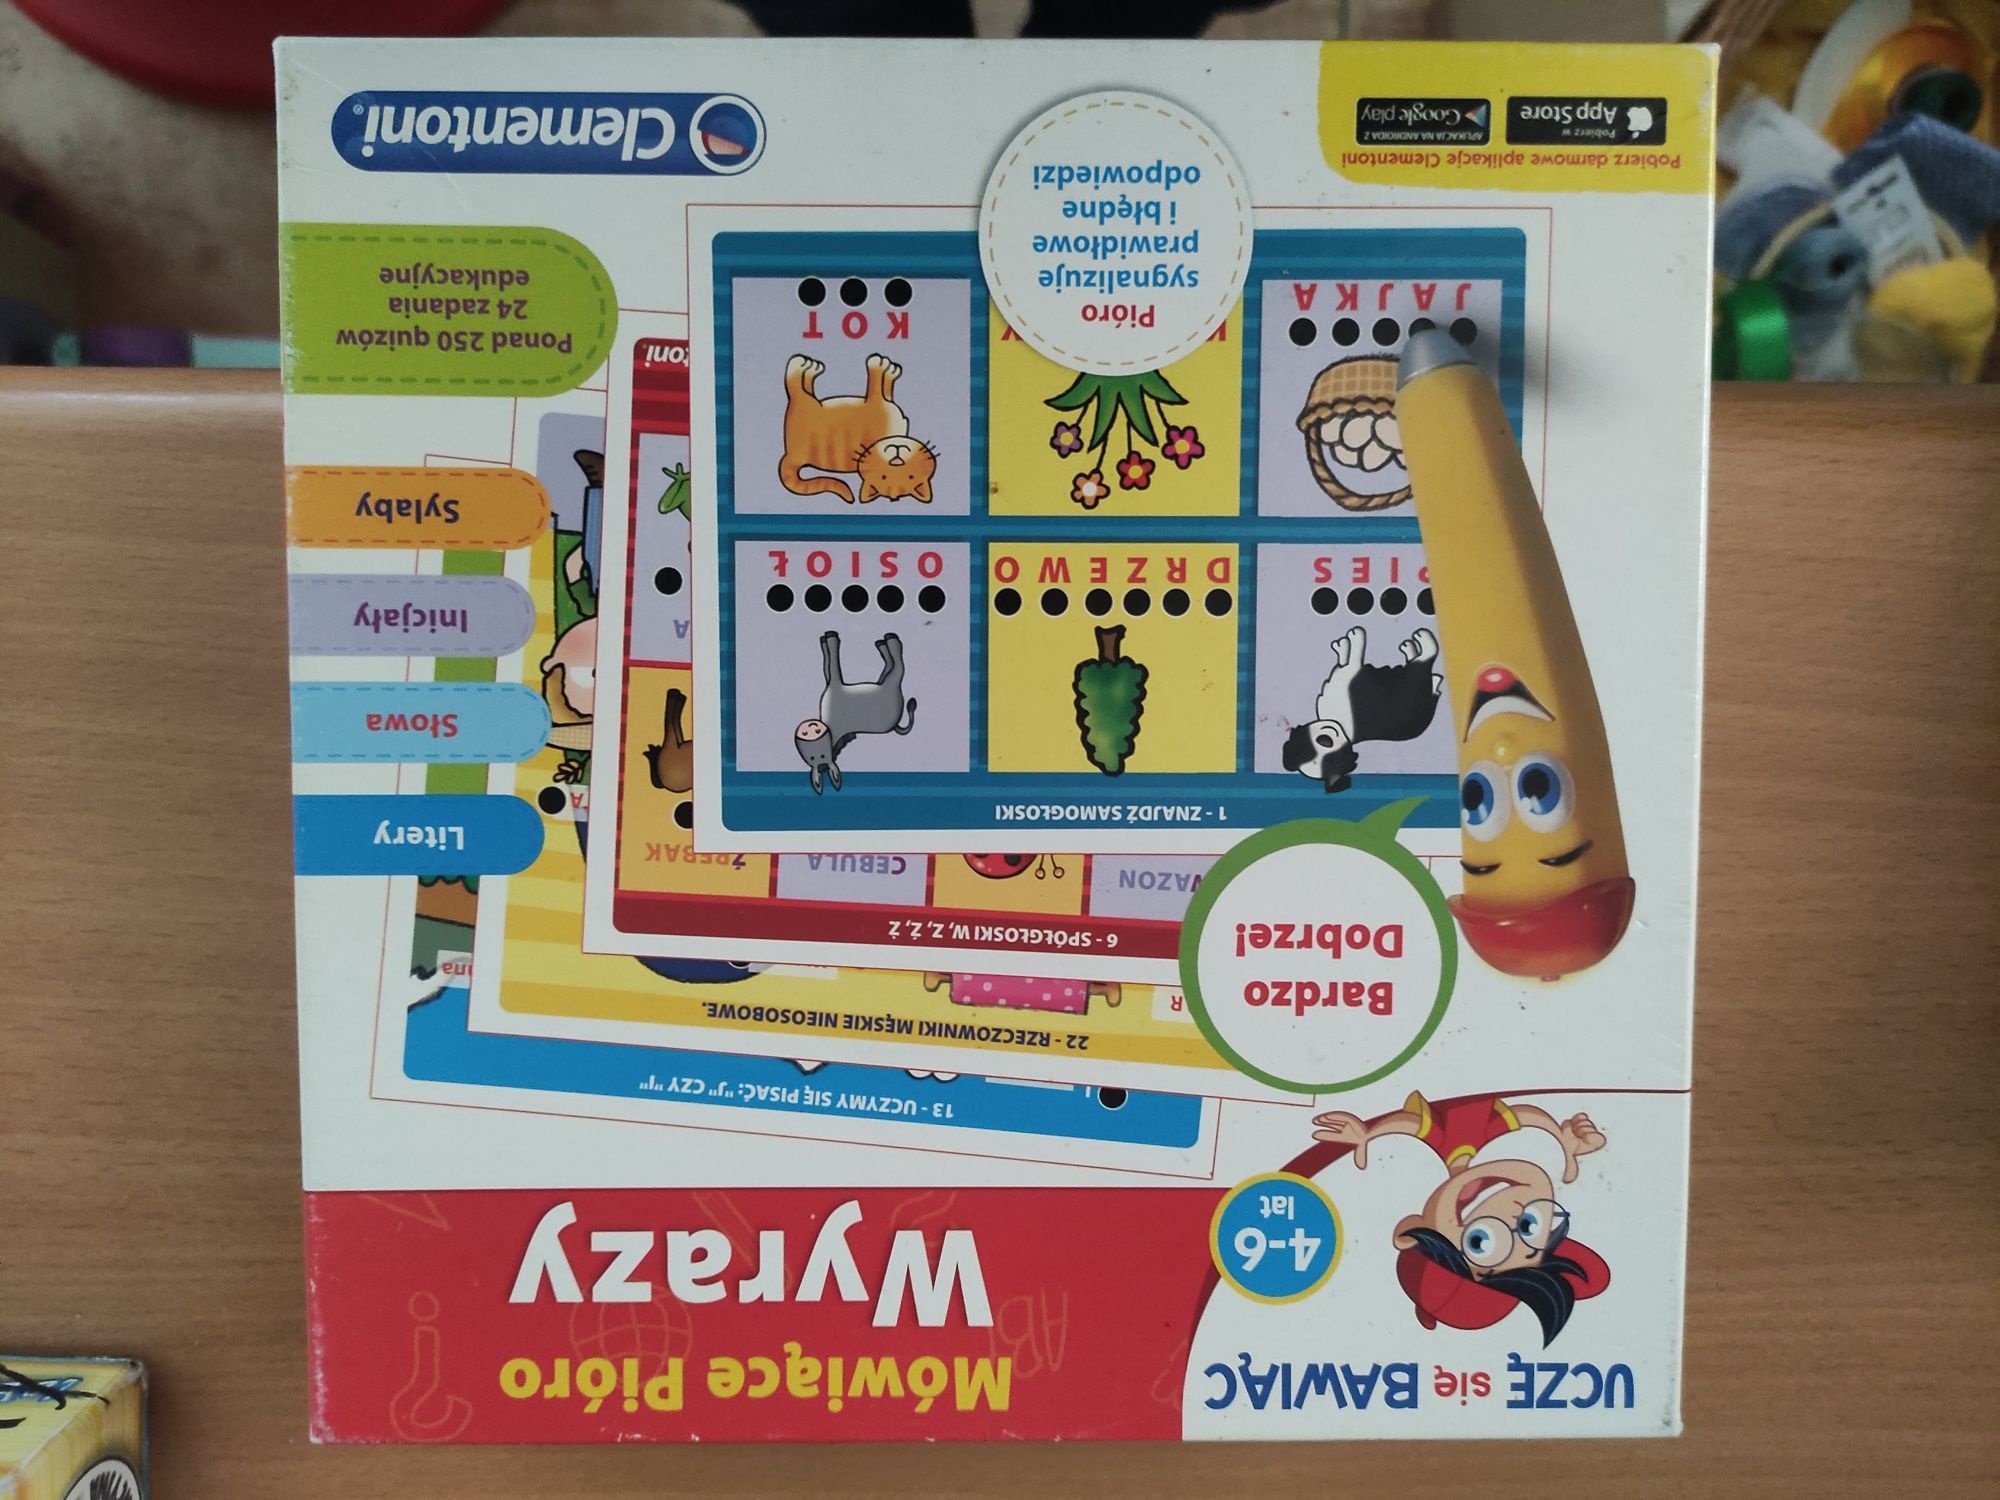 Zestaw gier edukacyjnych dla dzieci, język angielski